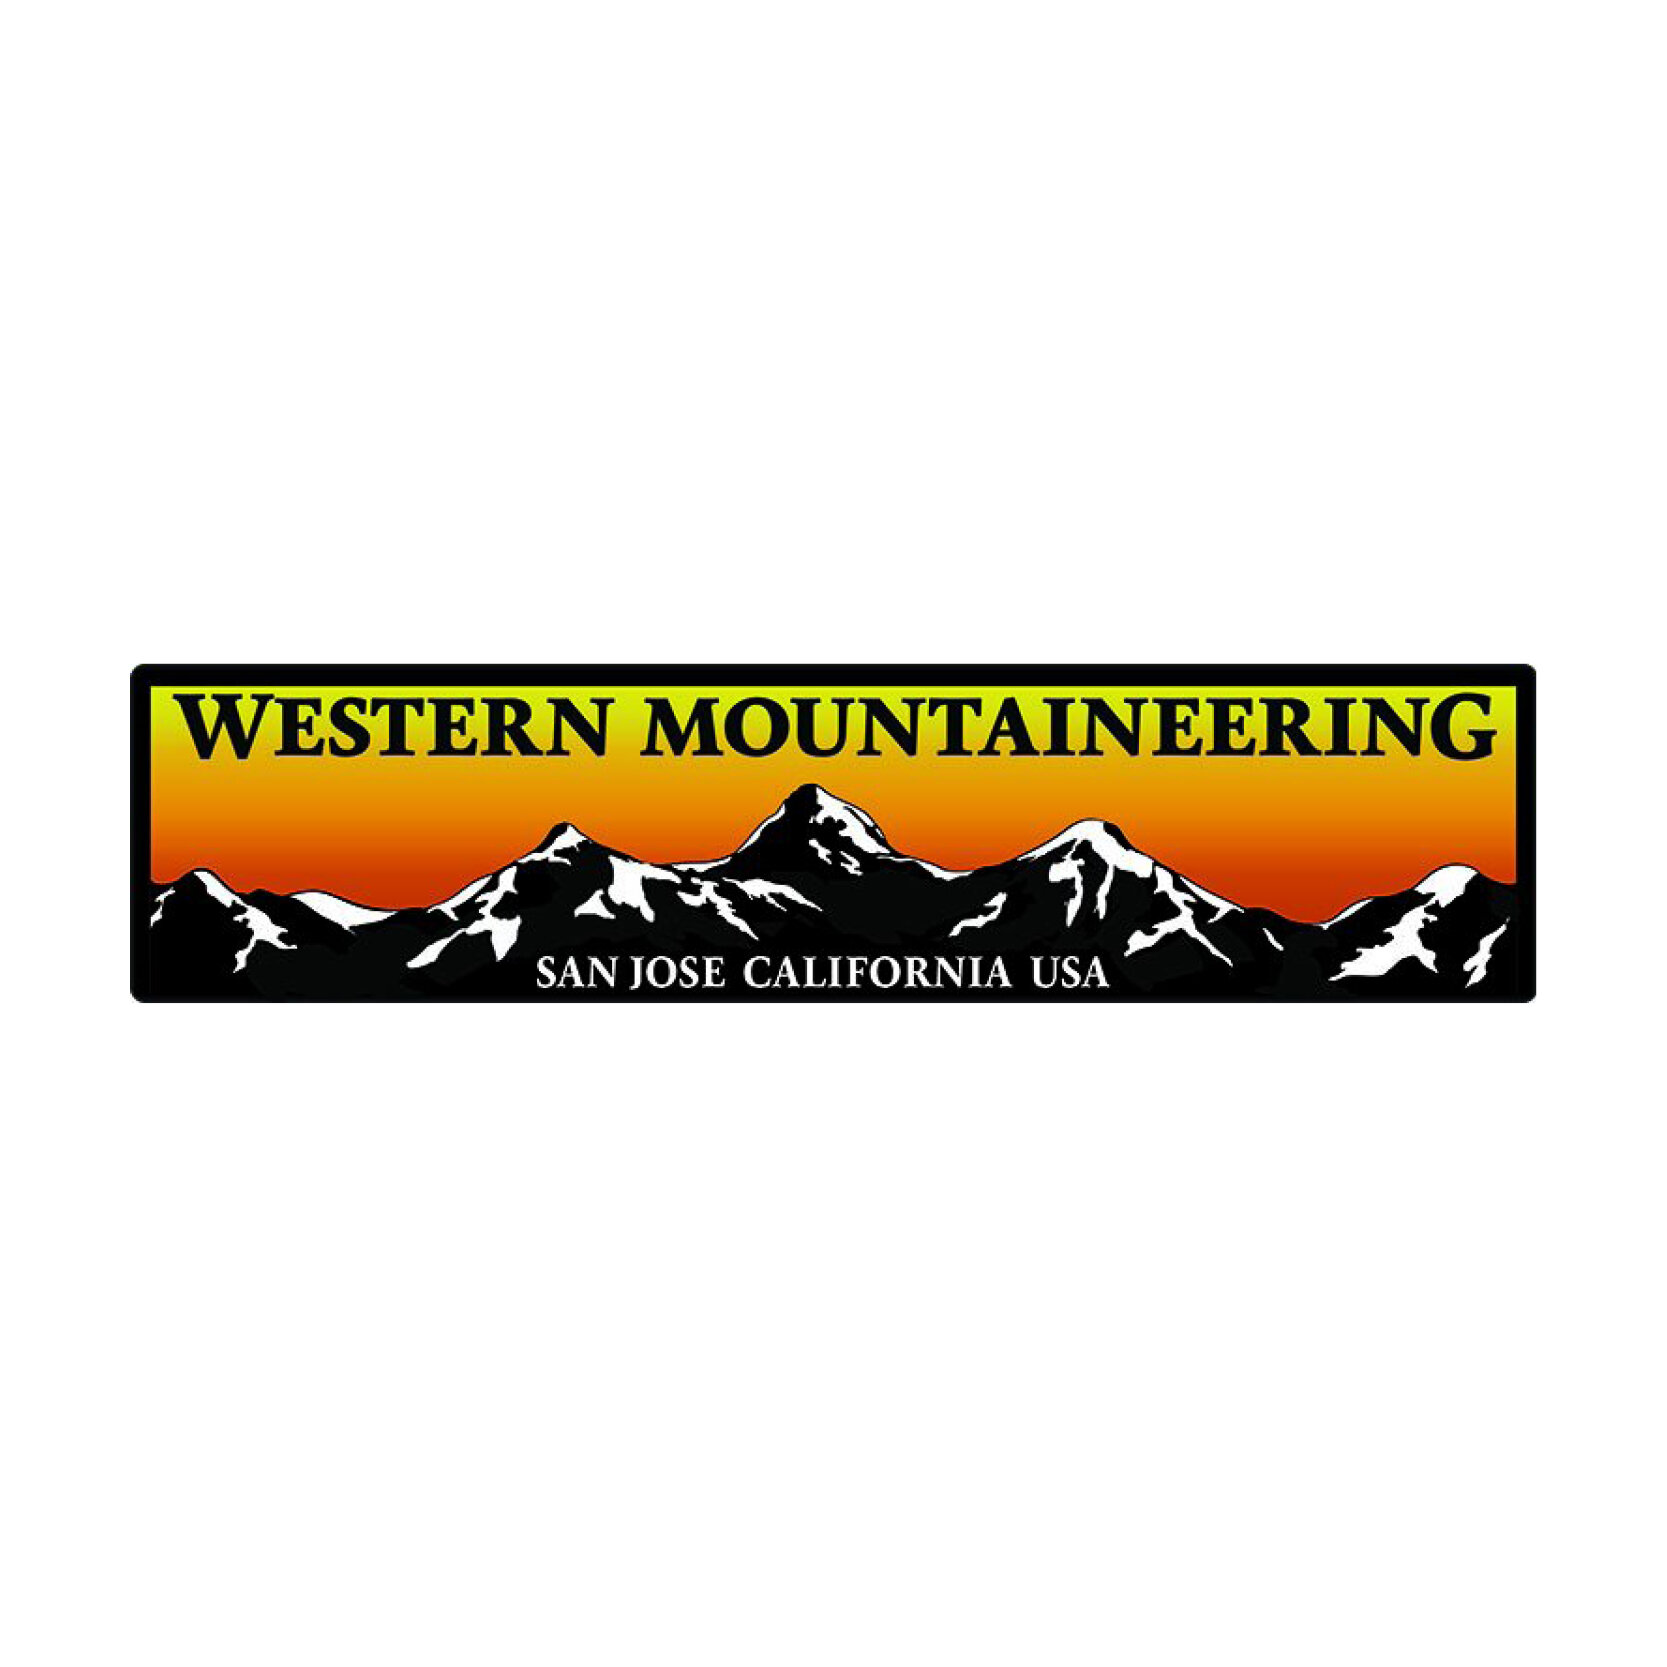 Western Mountaineering.jpg